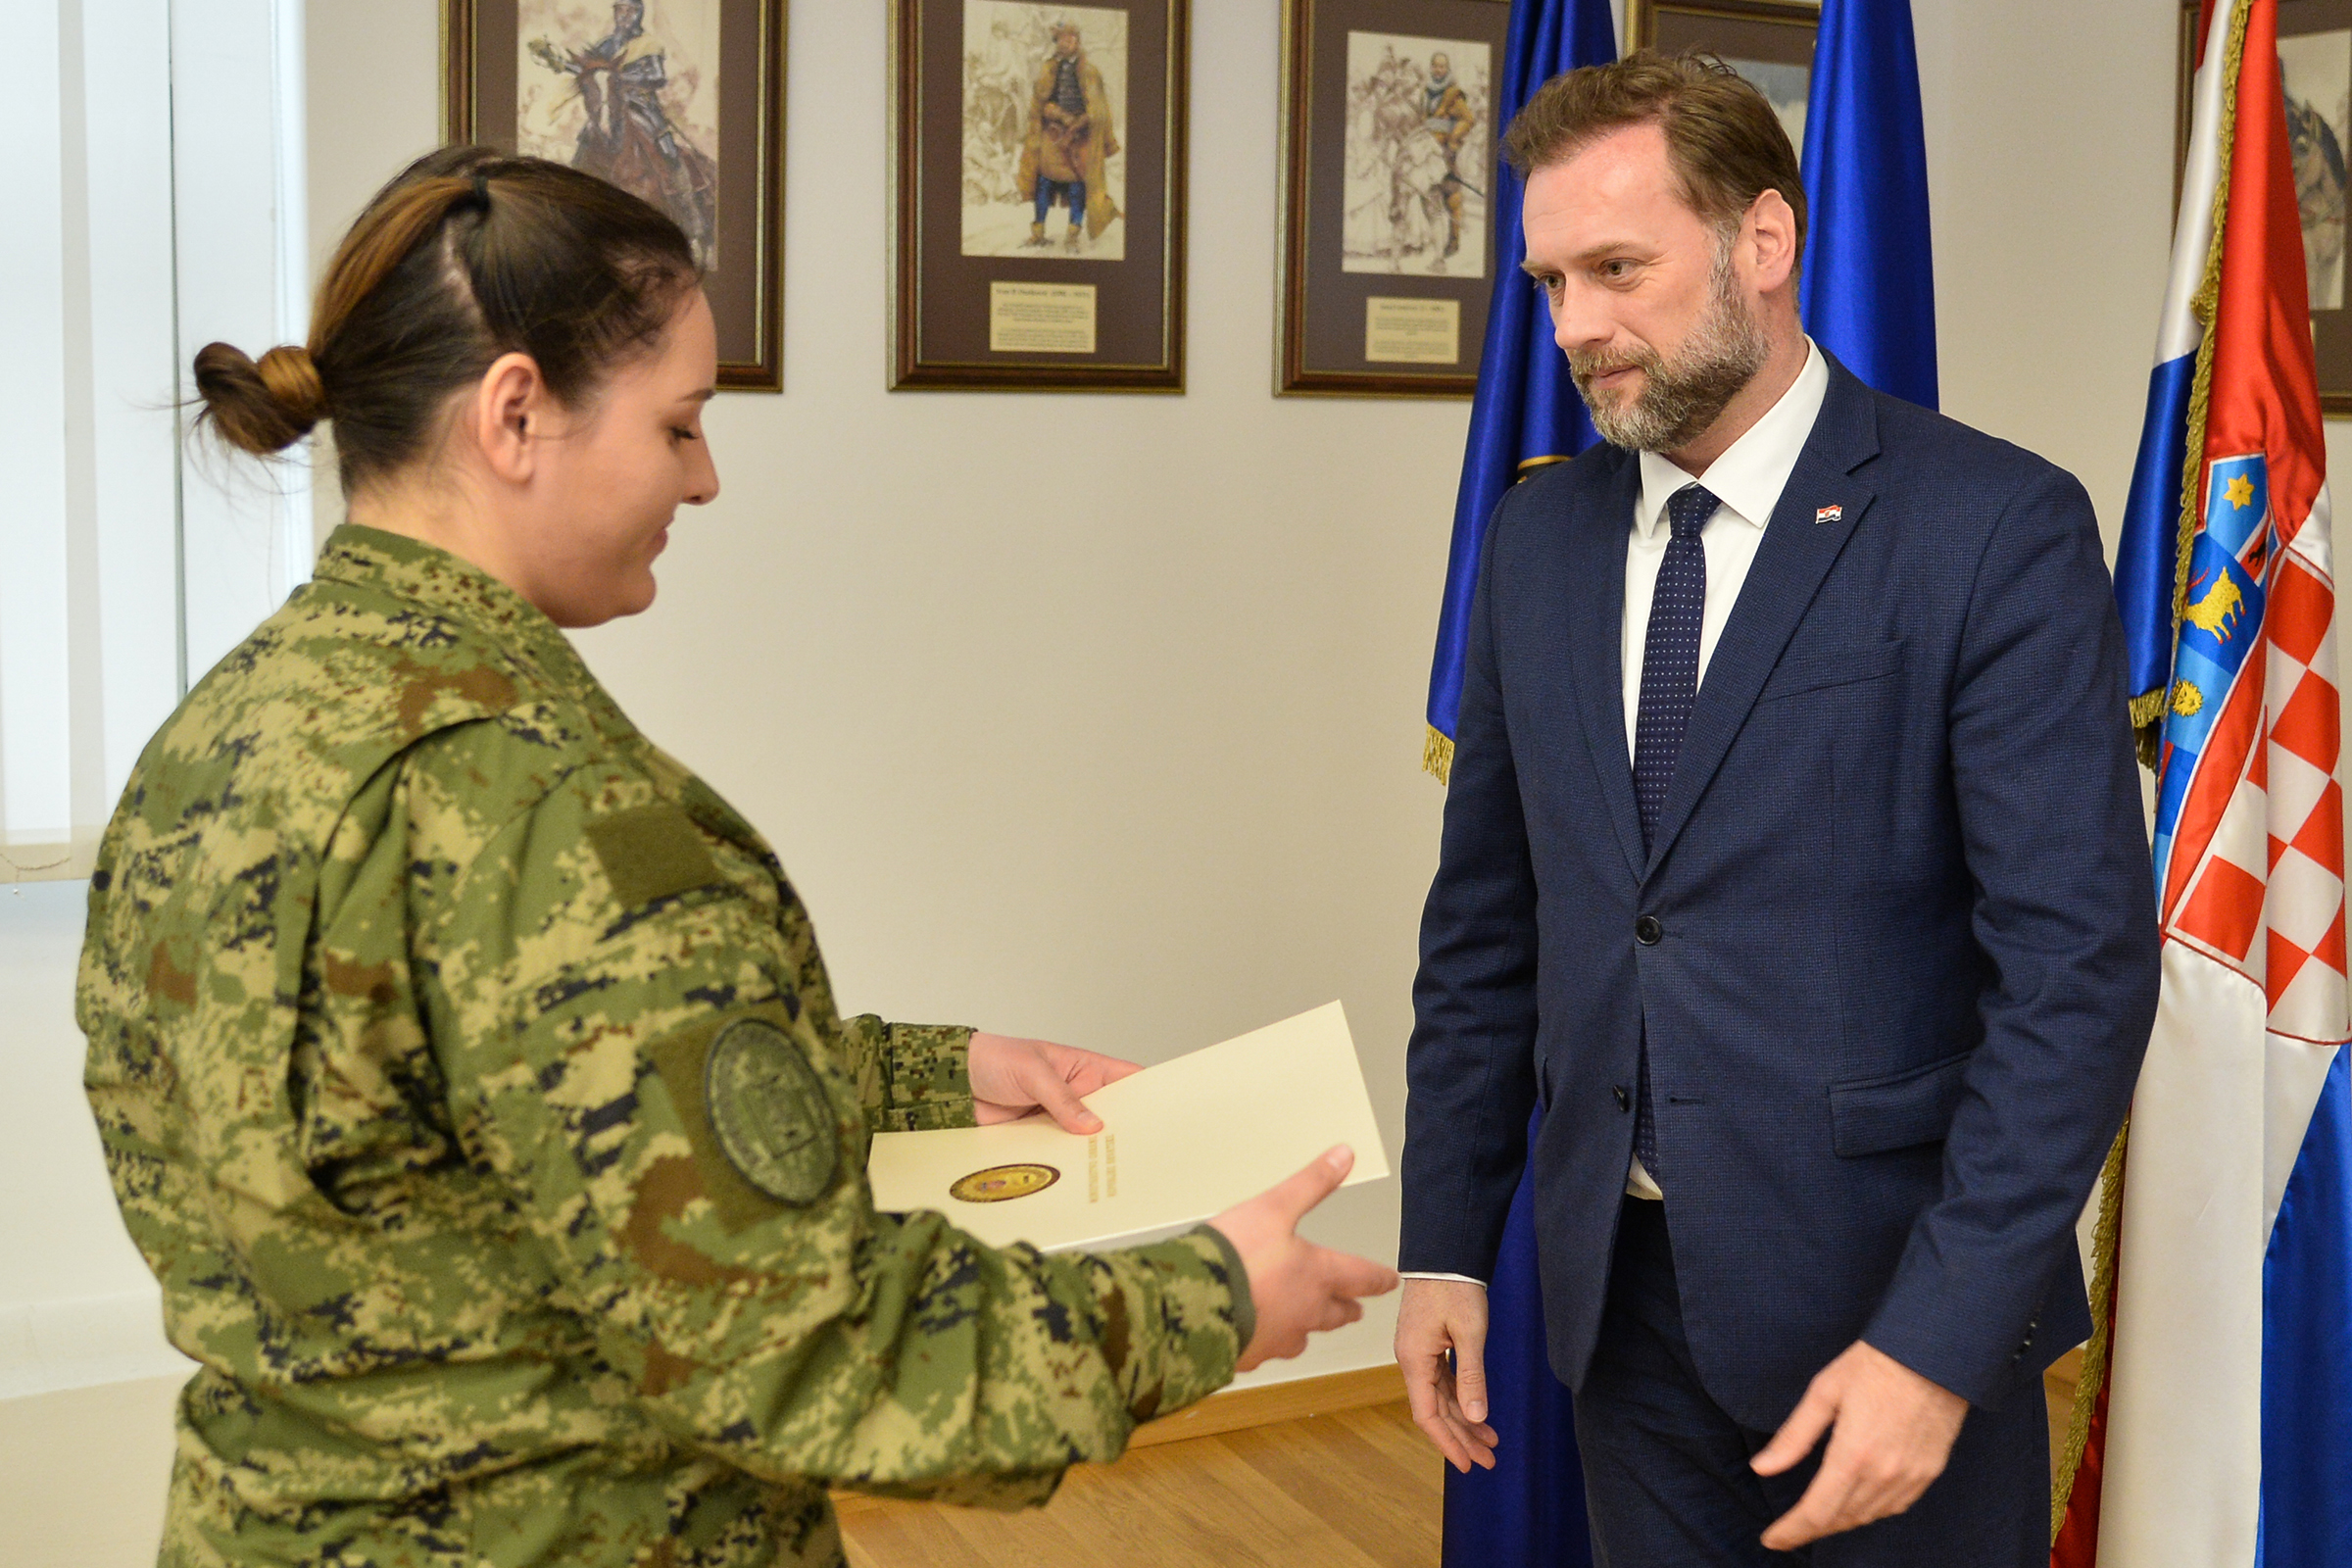 Ministar Banožić uručio rješenja o prijmu u vojnu službu časnicima zdravstvene službe